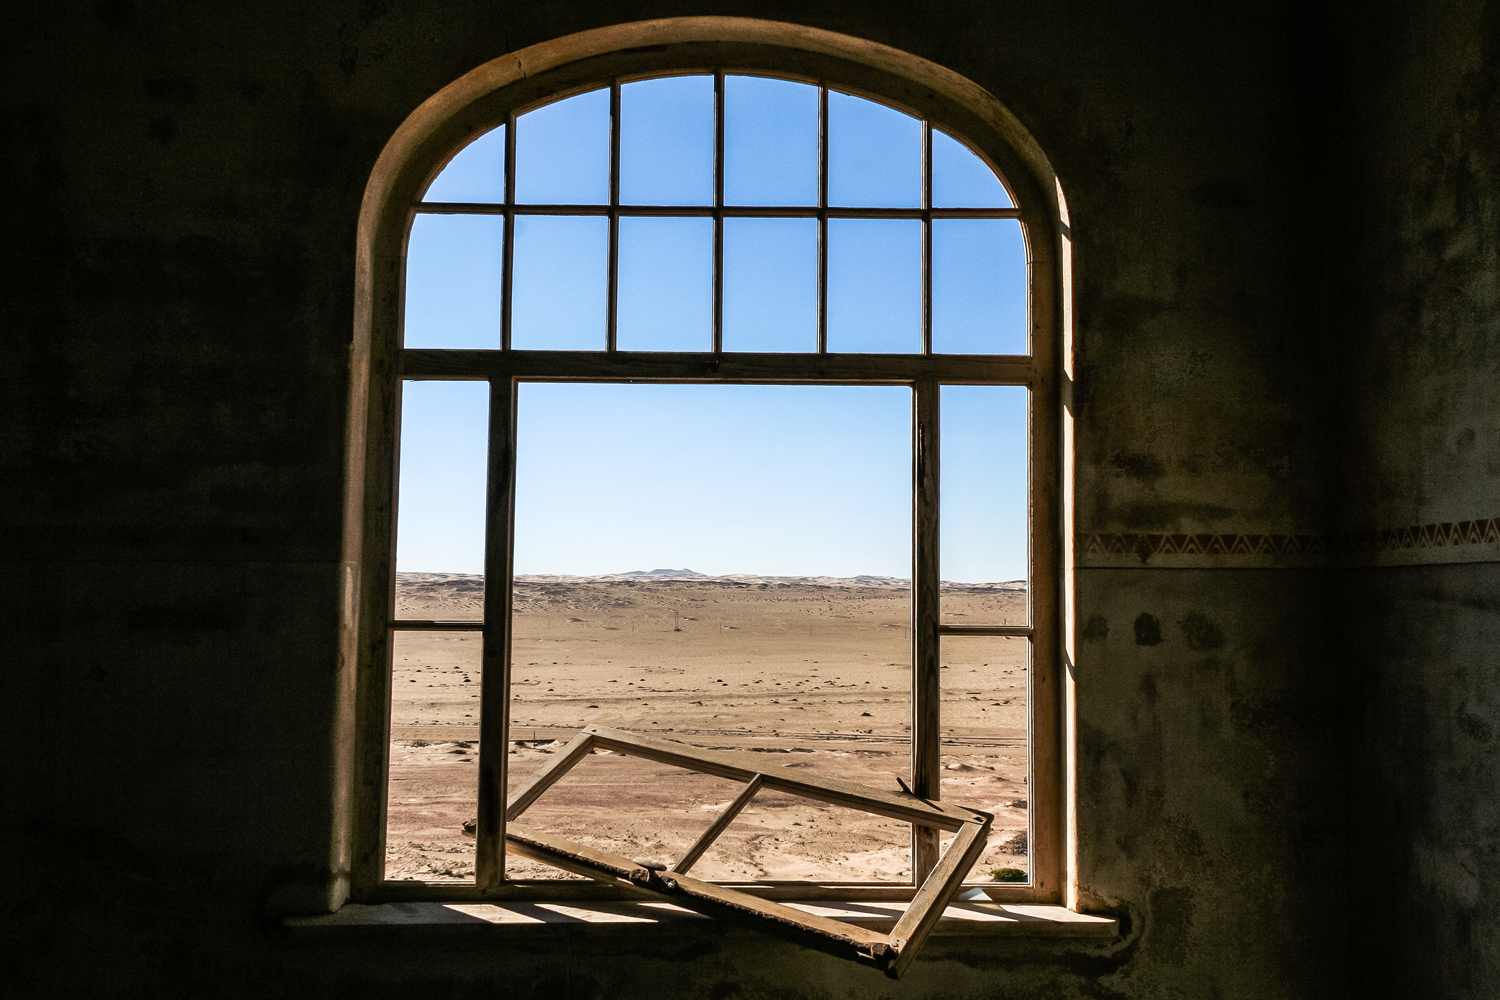 Kolmanskop’s houses are a part of the surrounding desert